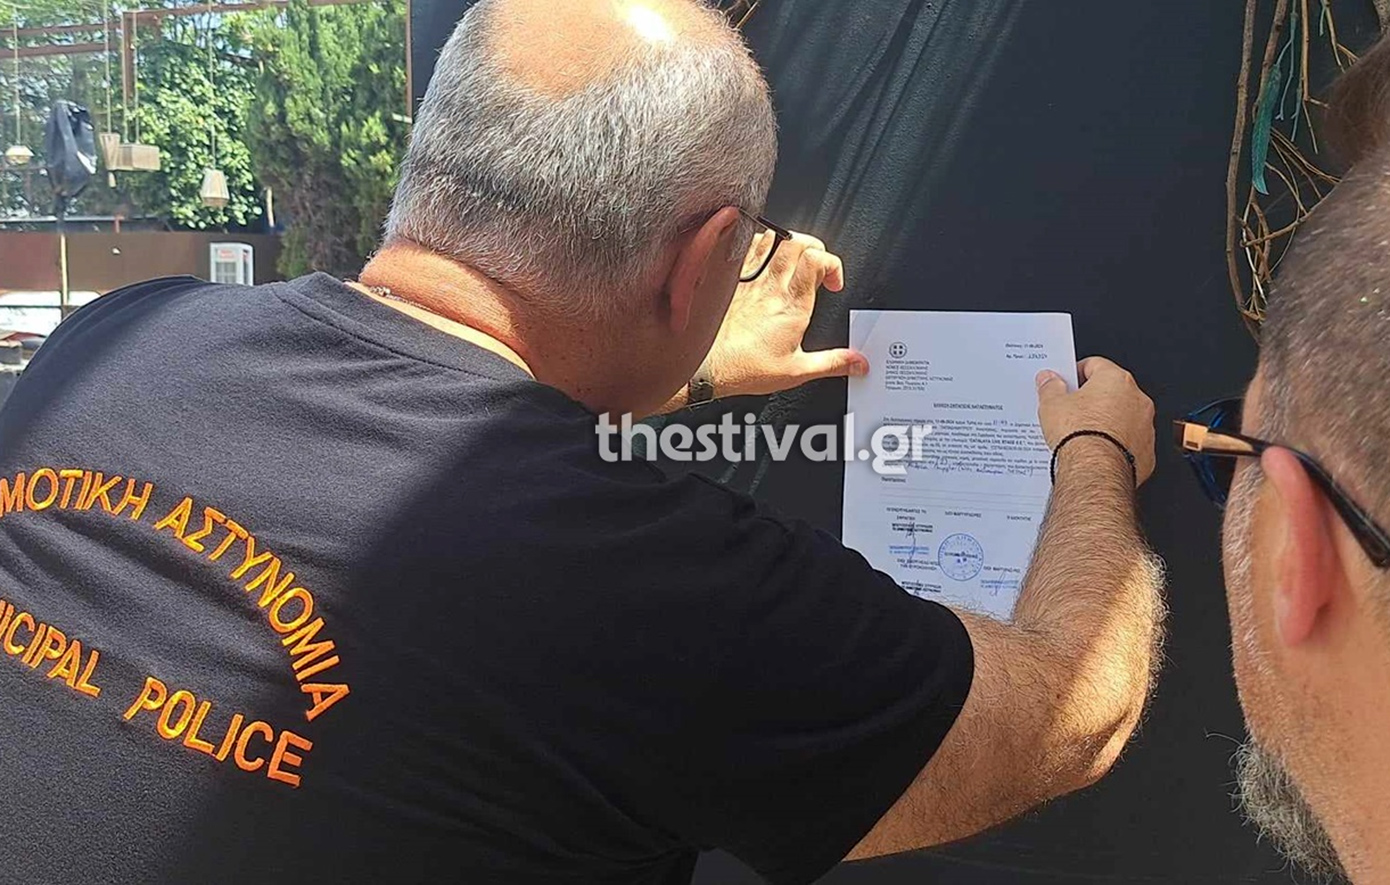 Δημοτικοί αστυνομικοί σφράγισαν το μαγαζί που τραγουδά η Πάολα στη Θεσσαλονίκη